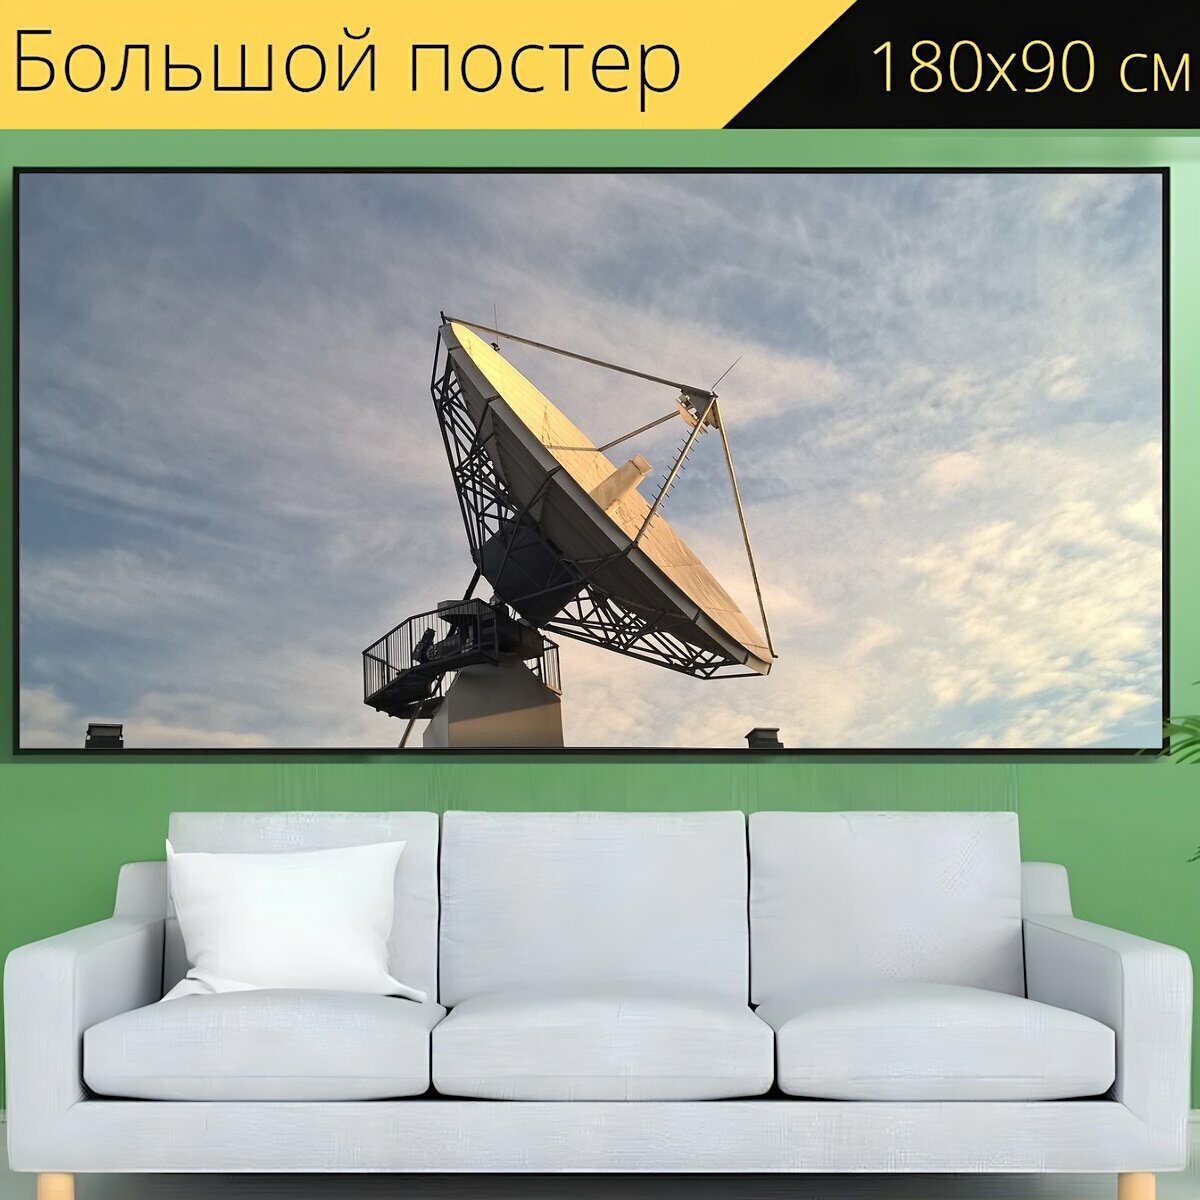 Большой постер "Спутниковая тарелка, чтобы прослушать превью трека, беспроводной" 180 x 90 см. для интерьера